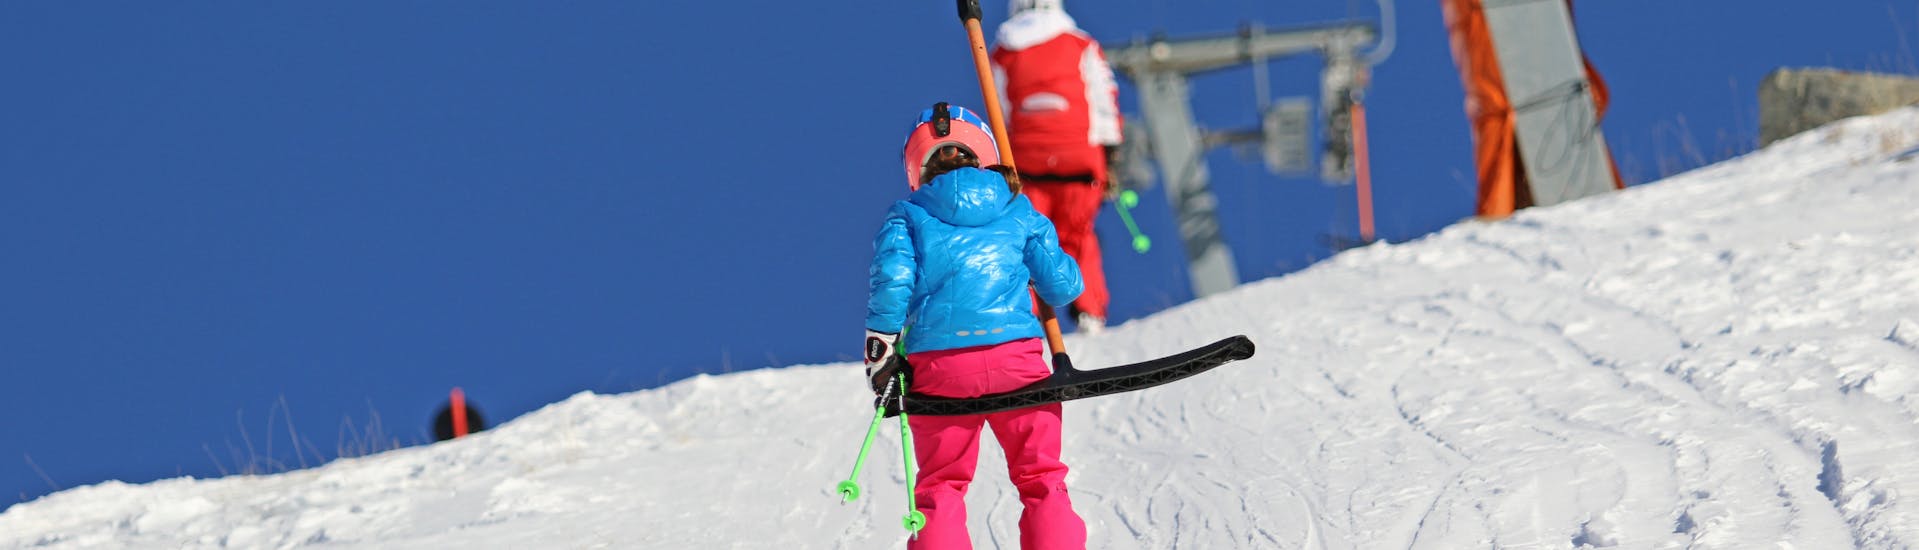 Privé skilessen voor kinderen in Samnaun/Ischgl.